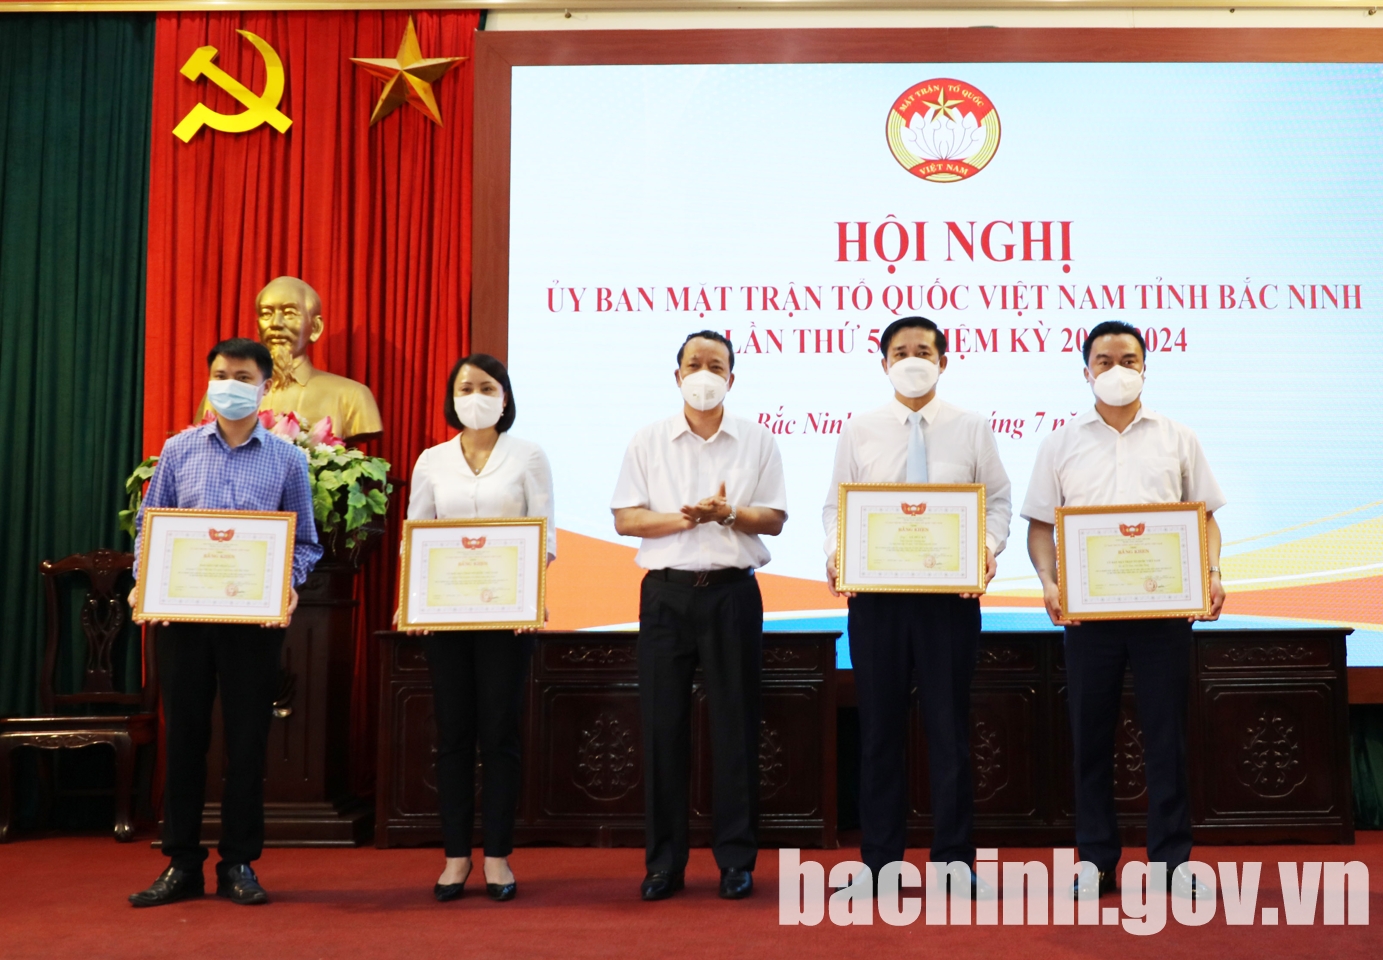 Hội nghị Ủy ban MTTQ Việt Nam tỉnh Bắc Ninh lần thứ 5, nhiệm kỳ 2019 -2024